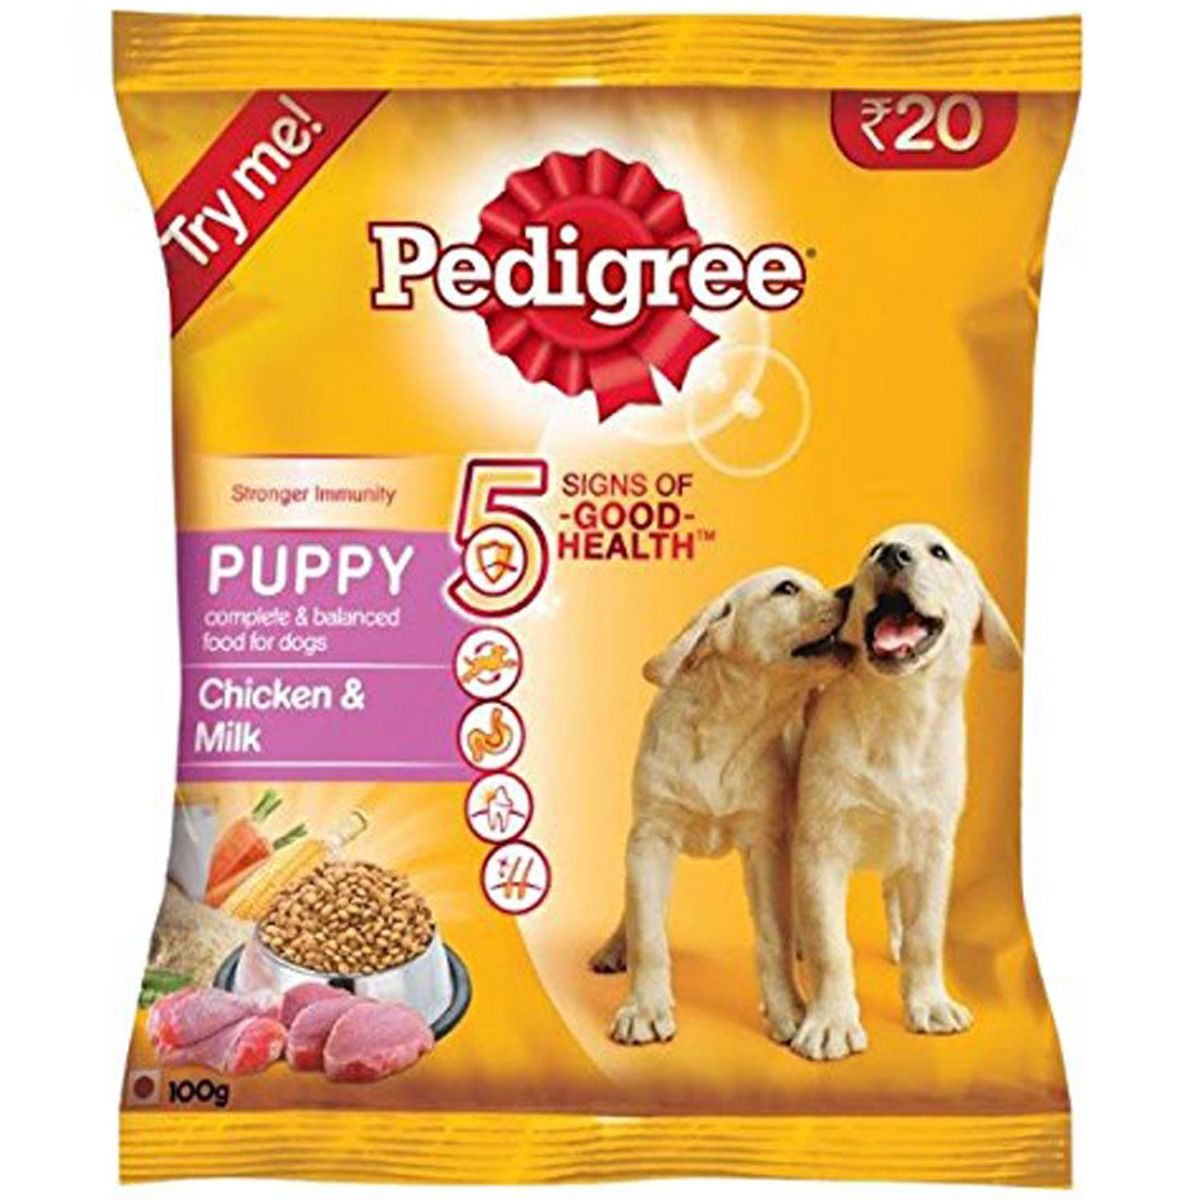 Buy Pedigree Puppy Chicken & Milk 100g Online